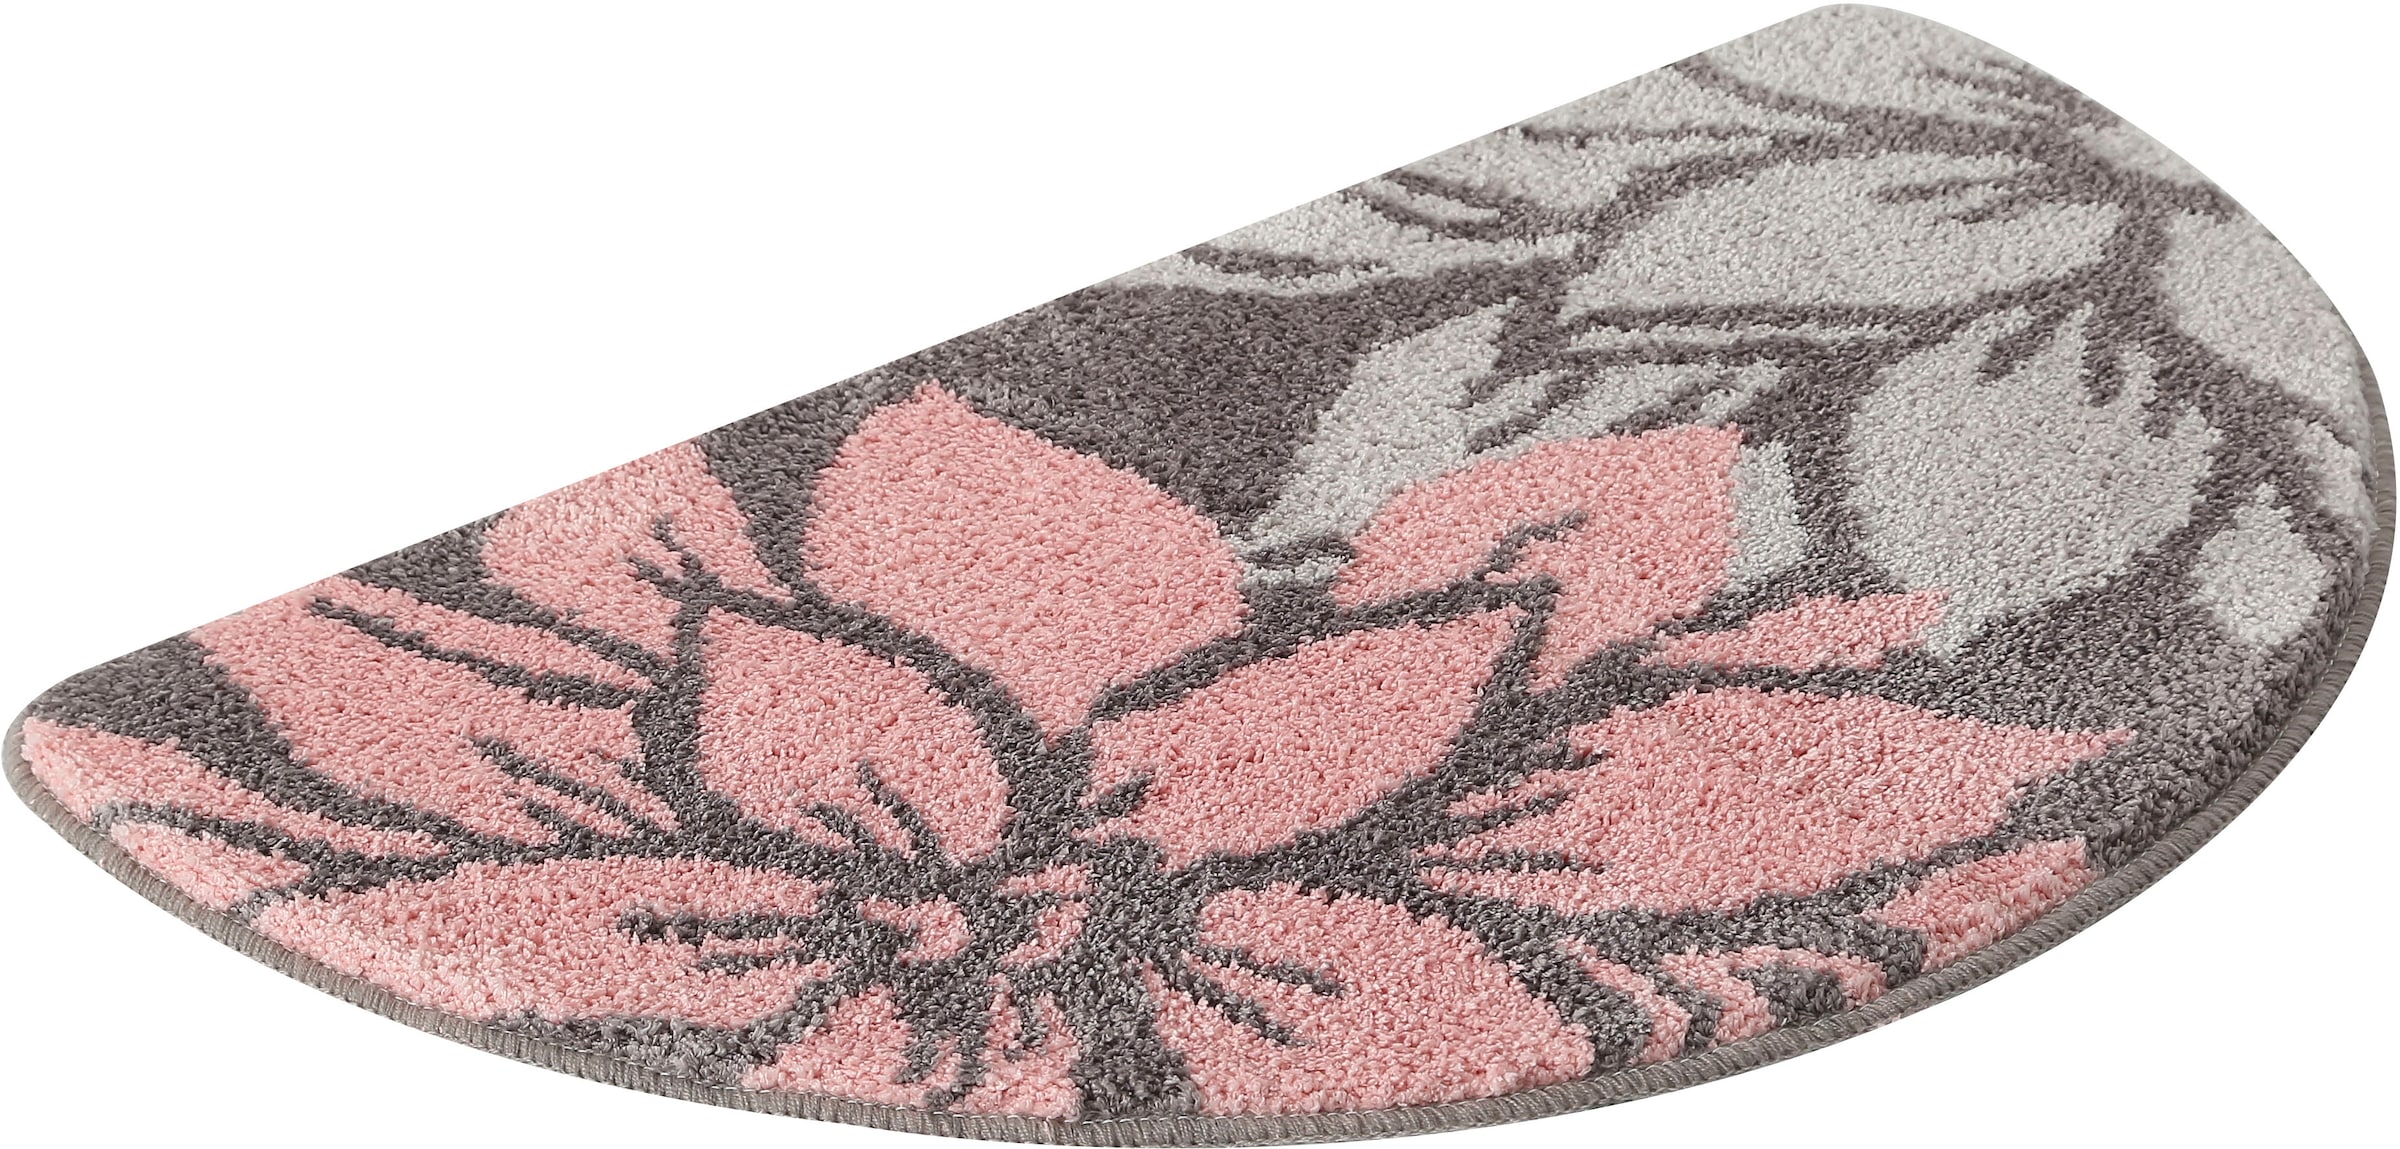 Home affaire Badematte »Susan«, Höhe 15 mm, fußbodenheizungsgeeignet-strapazierfähig, Blumen-Muster, Badteppich, Badematten auch als 3 teiliges Set & rund